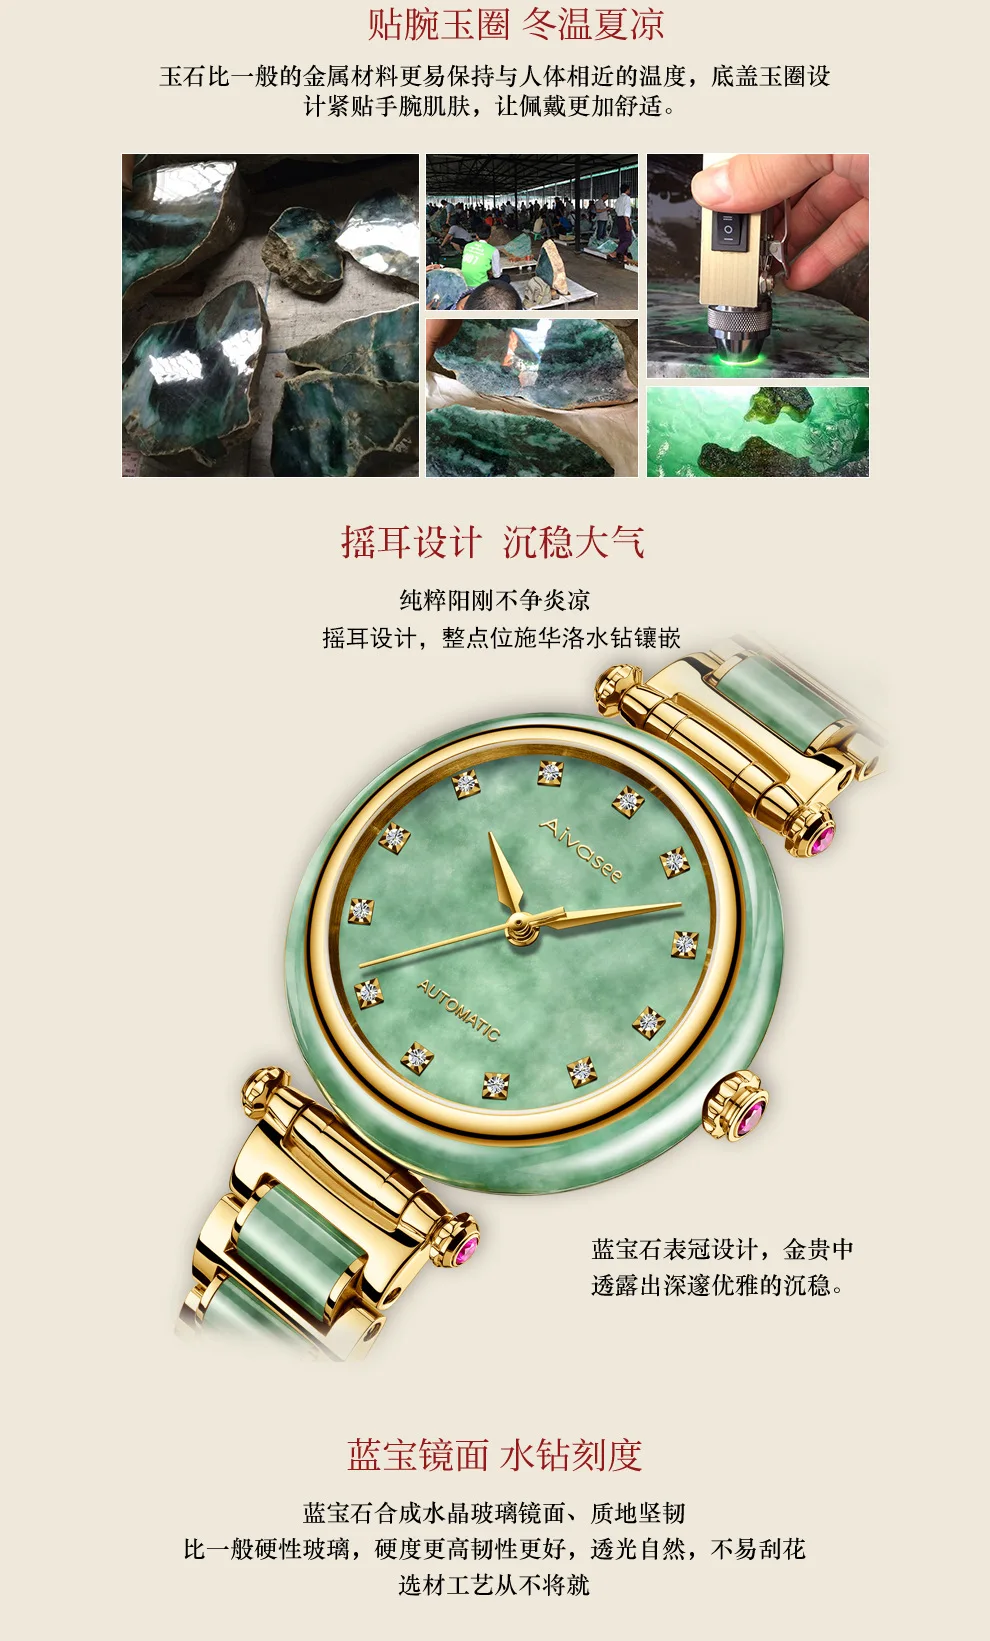 Мужские механические часы Colin Edwards jade прямо с фабрики, оптовая продажа, изготовленные на заказ hetian jade, автоматические часы